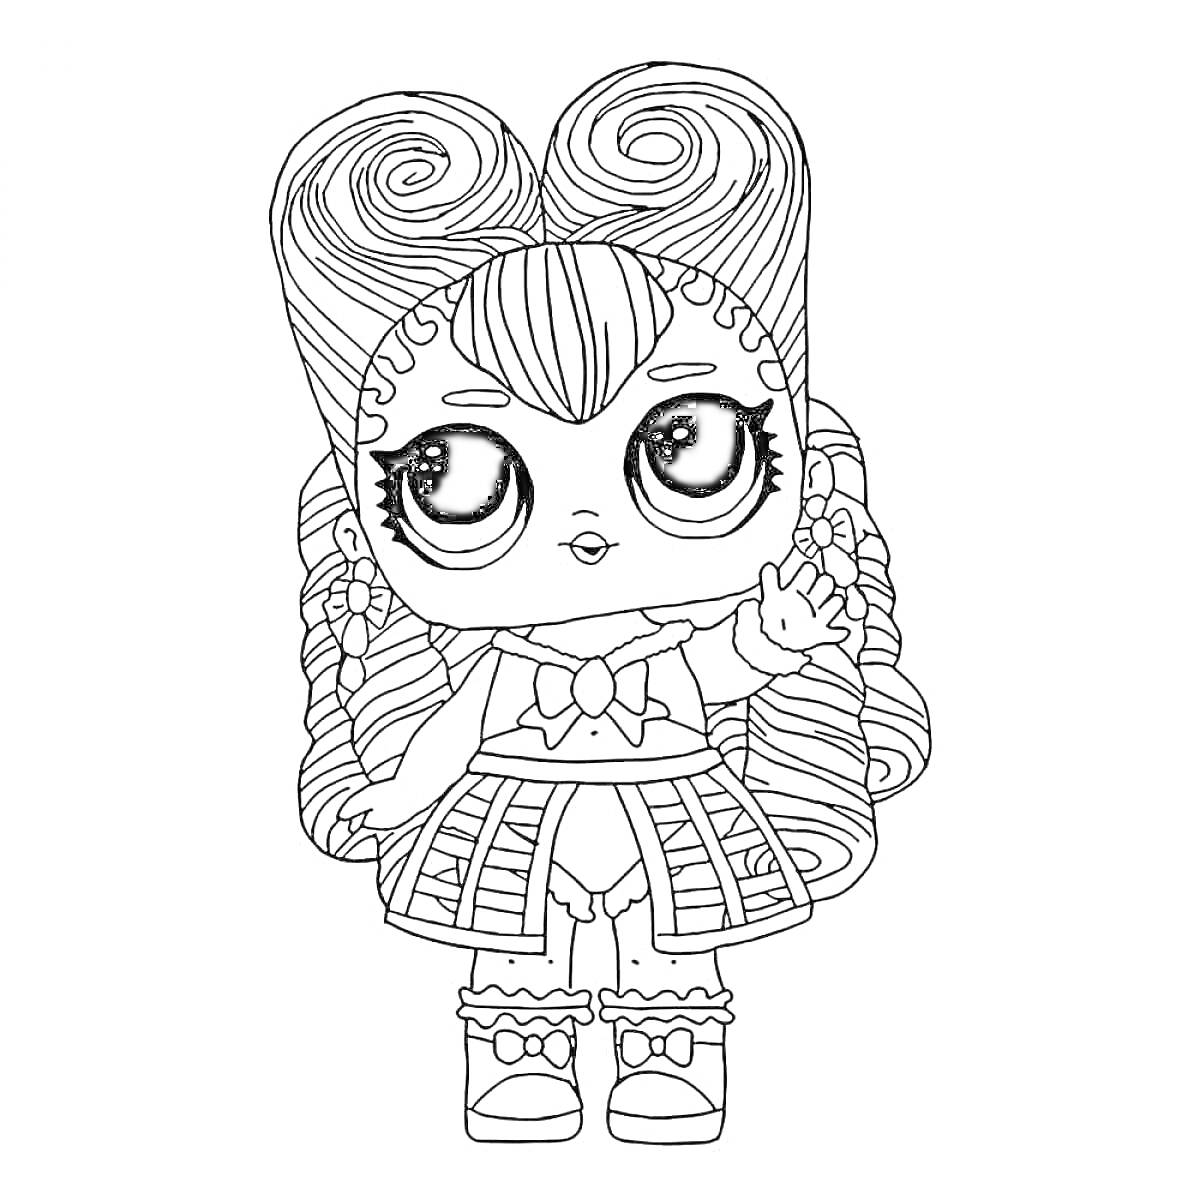 Раскраска Кукла ЛОЛ с длинными волосами и бантиком, поднятой рукой, юбкой с узорами и башмаками с пряжками